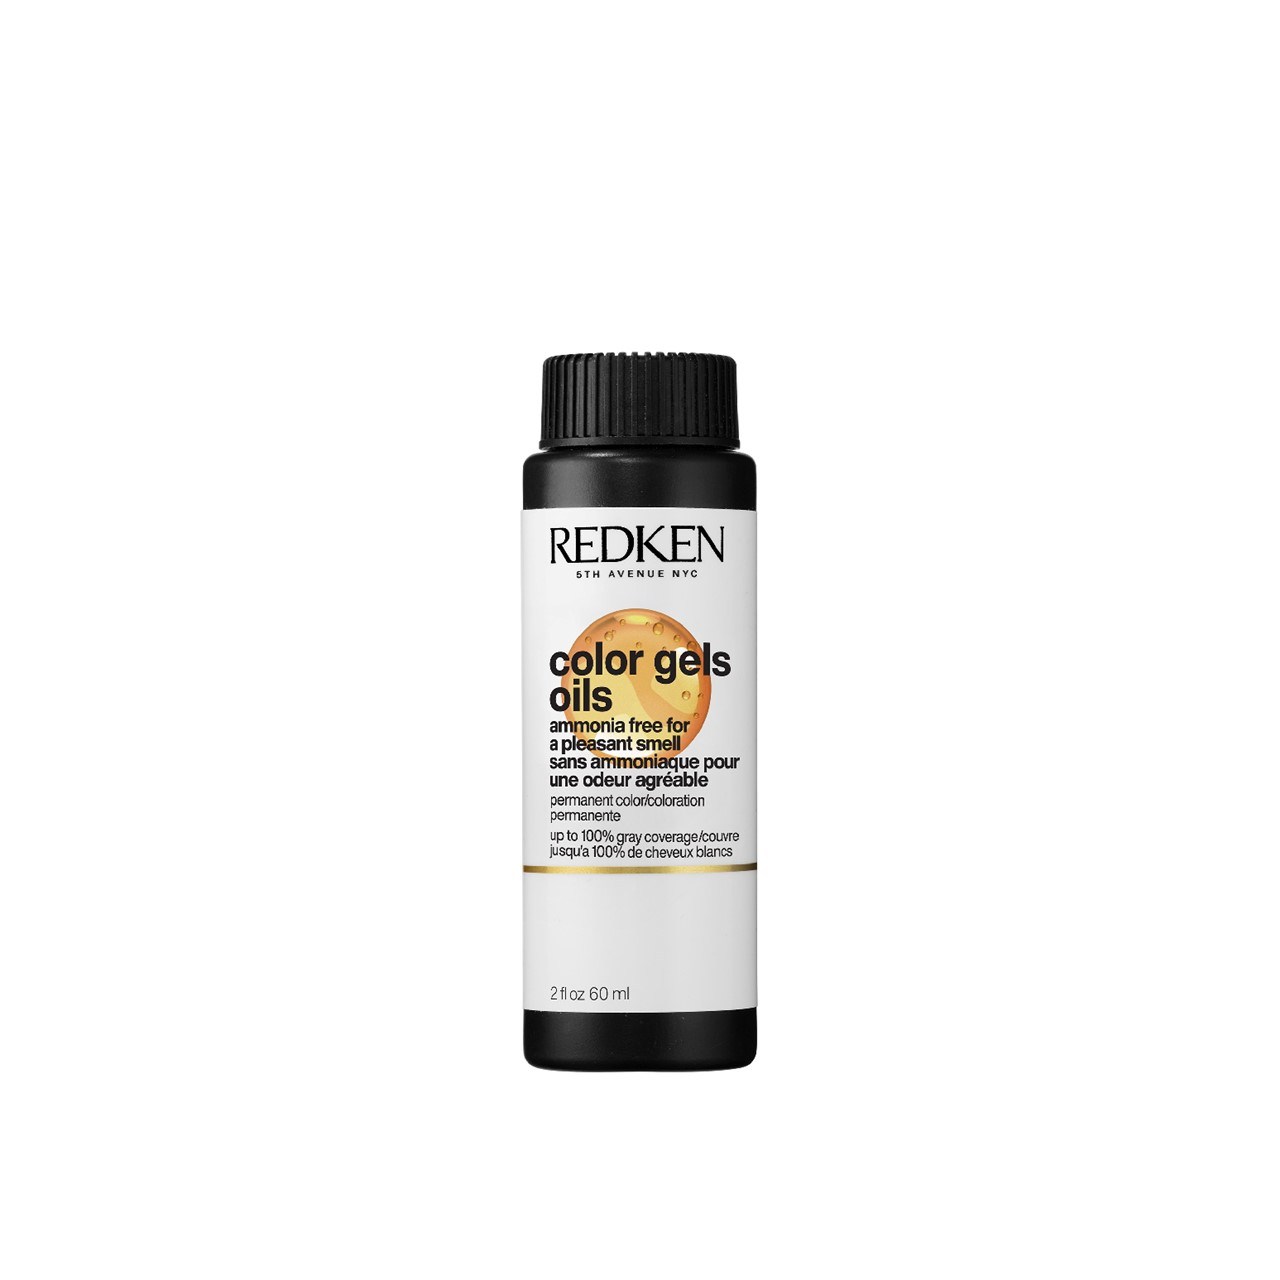 Redken Color Gels Oils 8AV Chilled Permanent Hair Dye 60ml (2.03 fl oz)